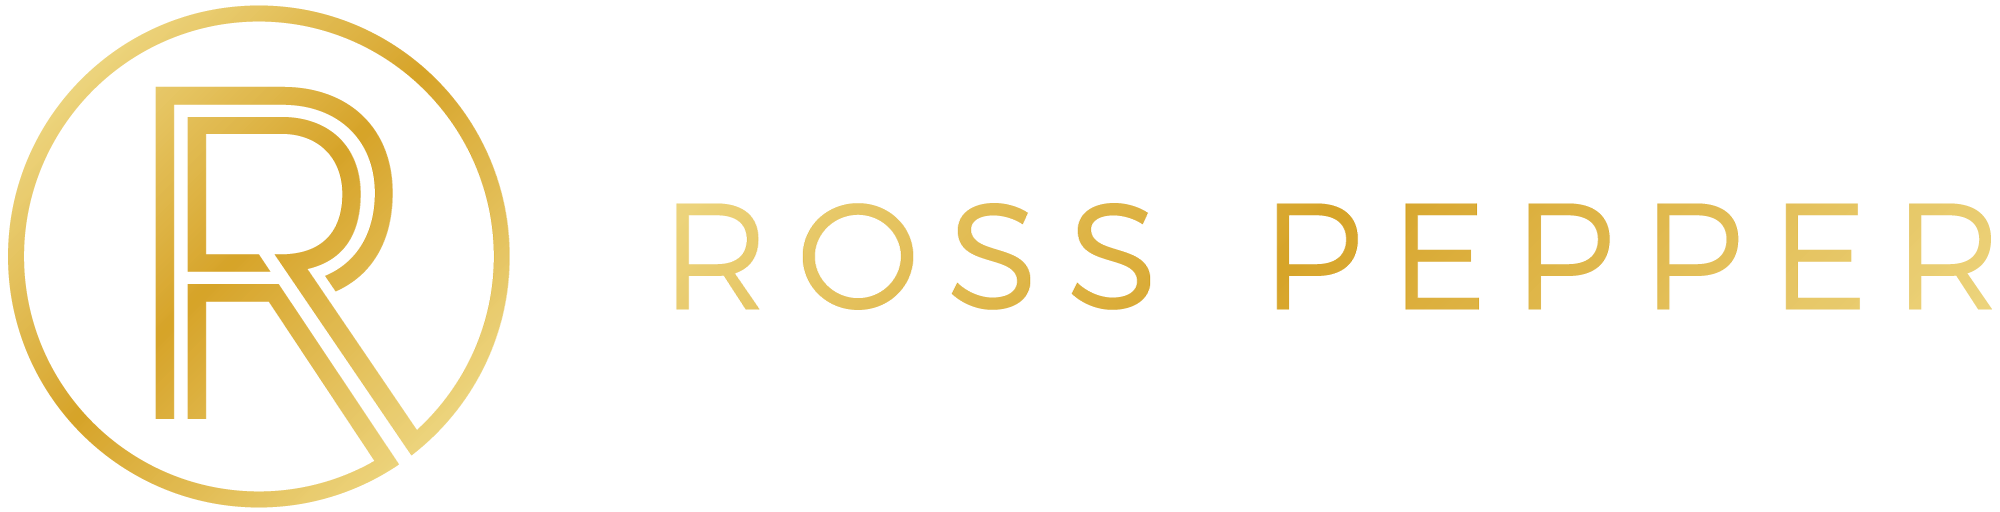 RossPepper-Master-Logo-Horizontal